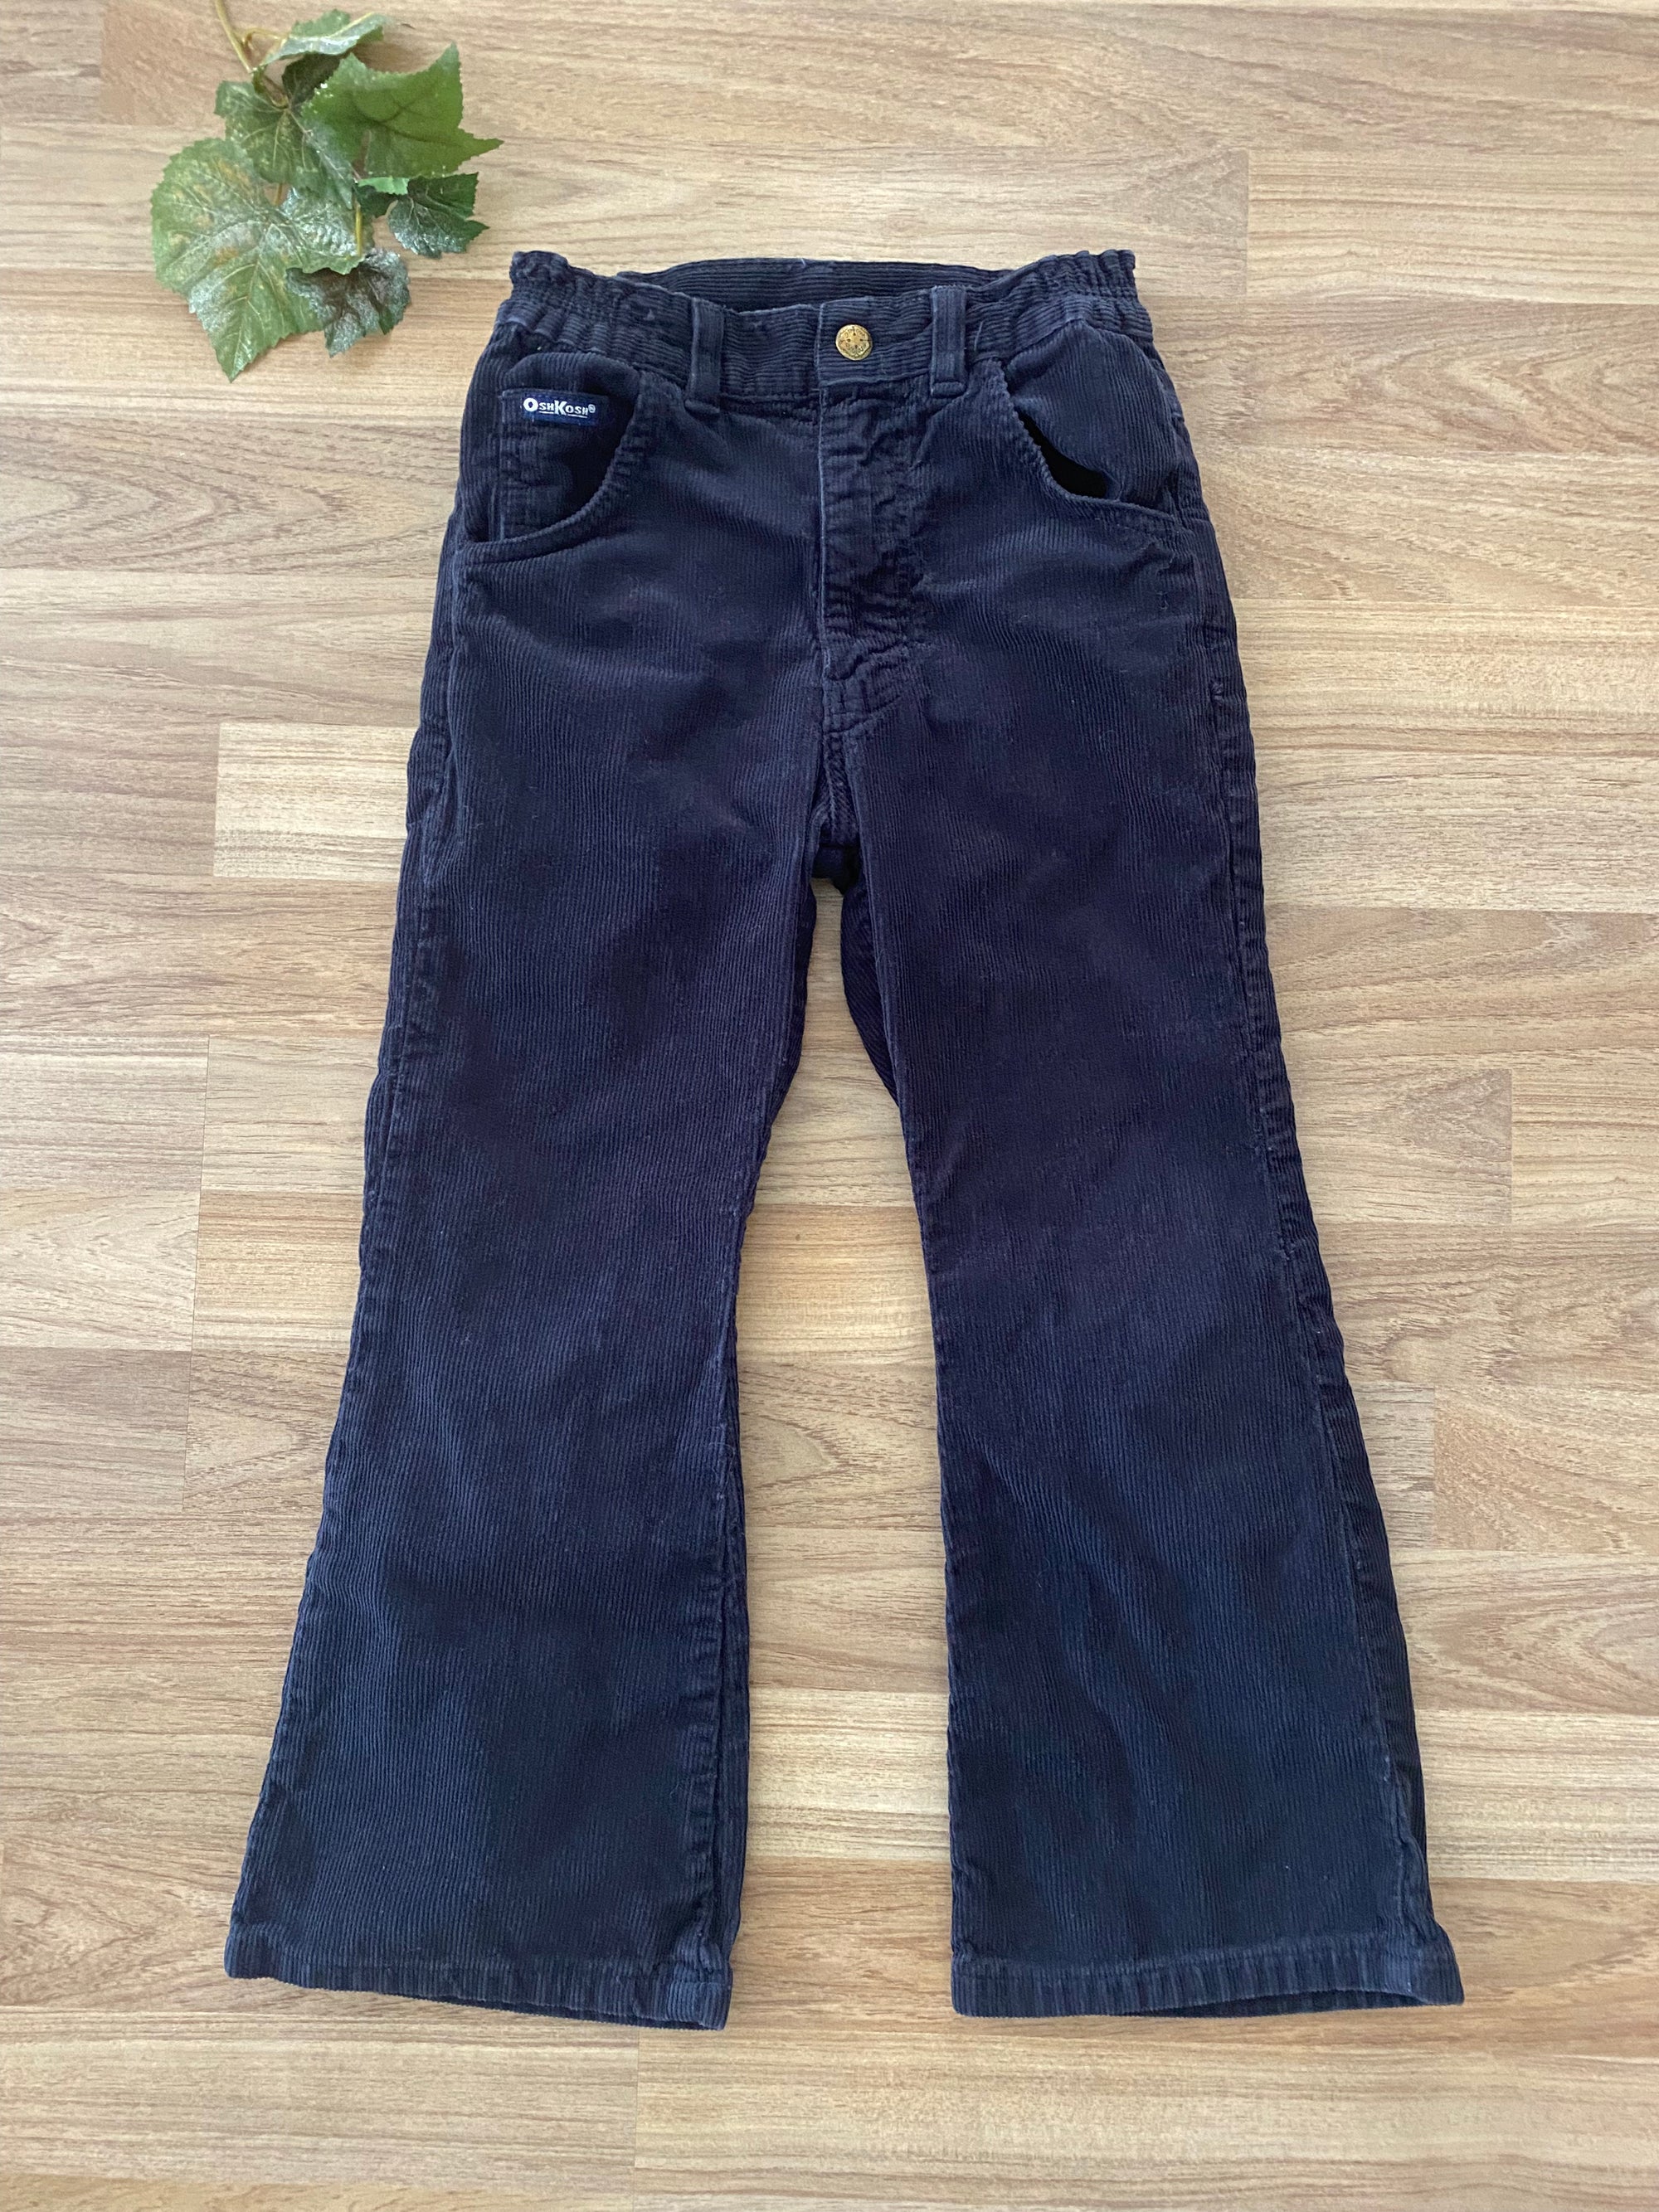 Corduroy Pants (Boys Size 6)